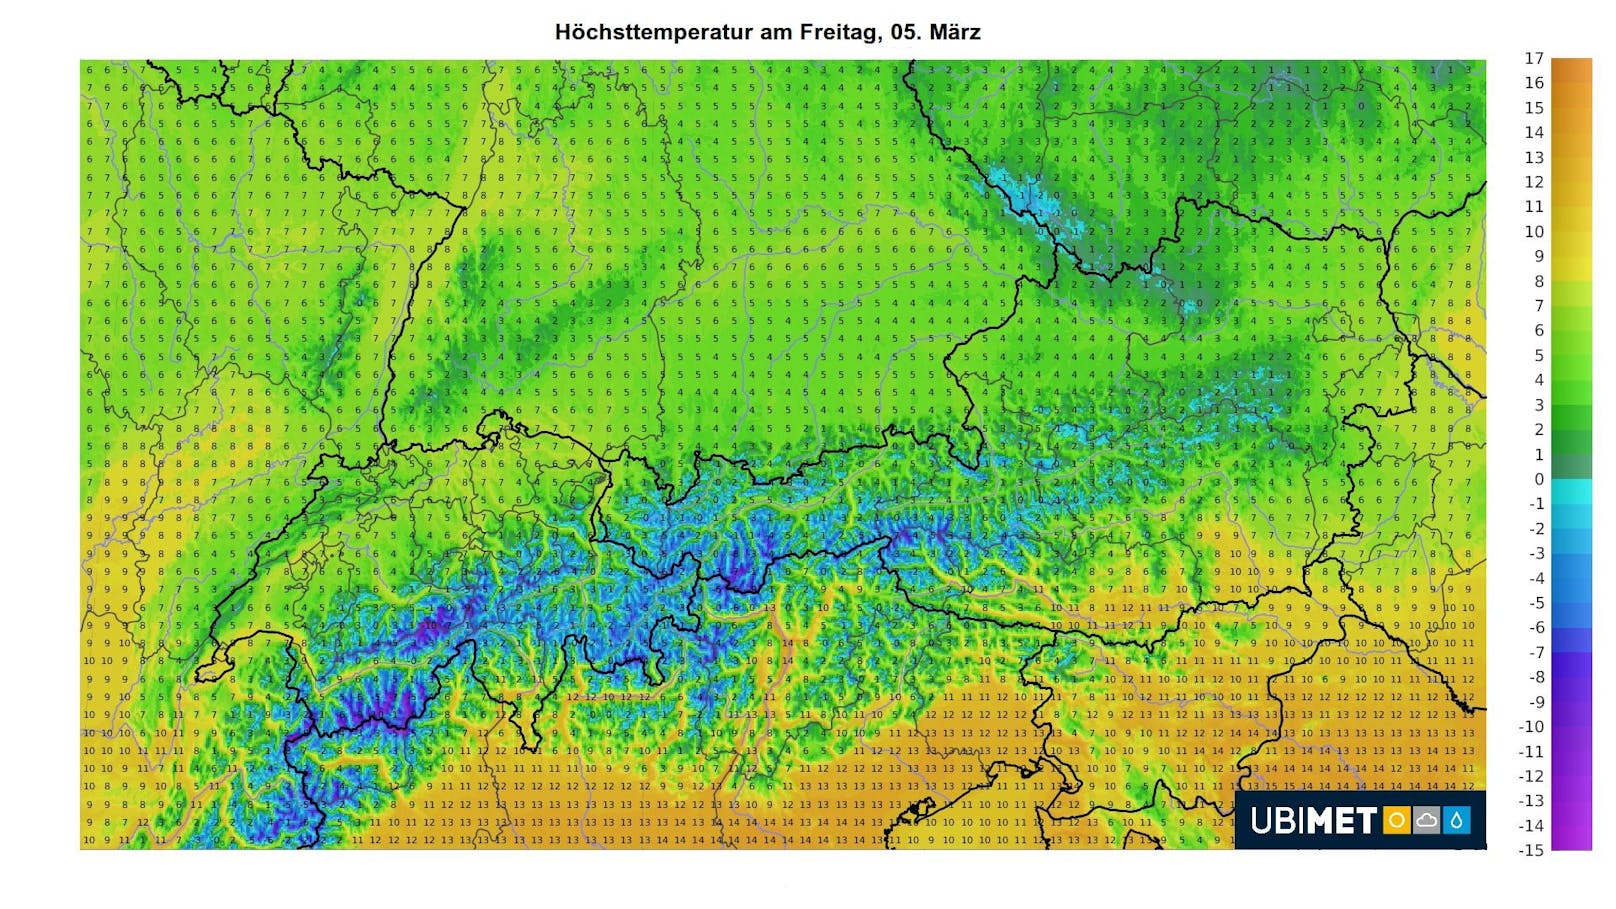 Die Temperaturen gehen am Freitag deutlich zurück, sie steigen nur noch auf 3 Grad im Oberen Waldviertel und 13 Grad in Kärnten.